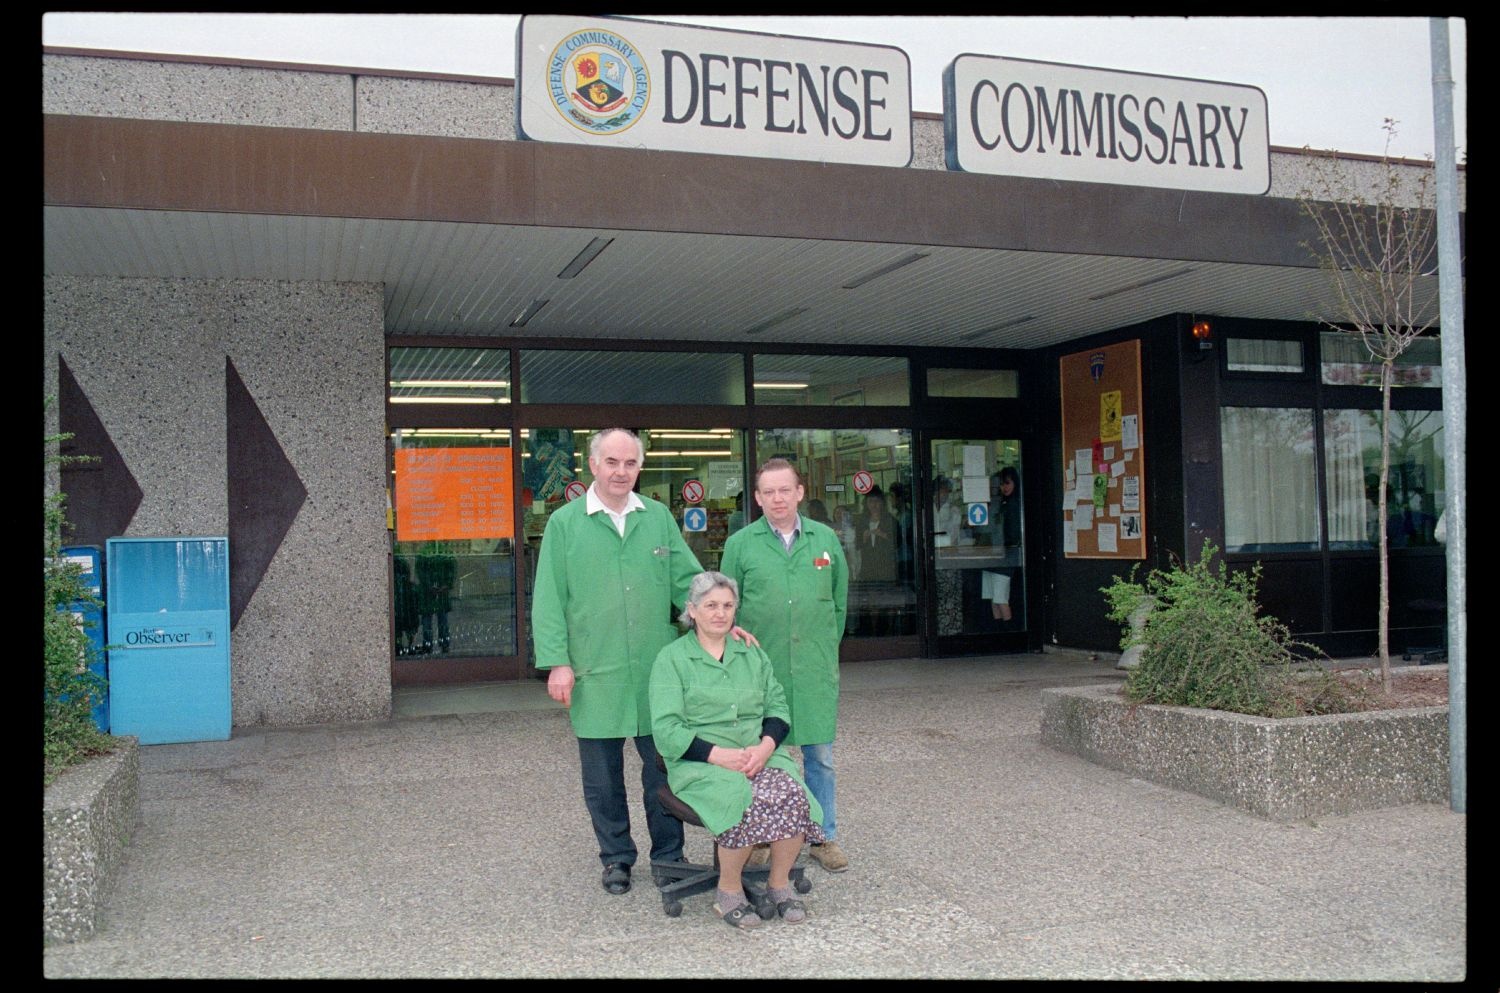 Fotografie: Angestellte des Defense Commissary im Einkaufszentrum Truman Plaza in Berlin-Dahlem